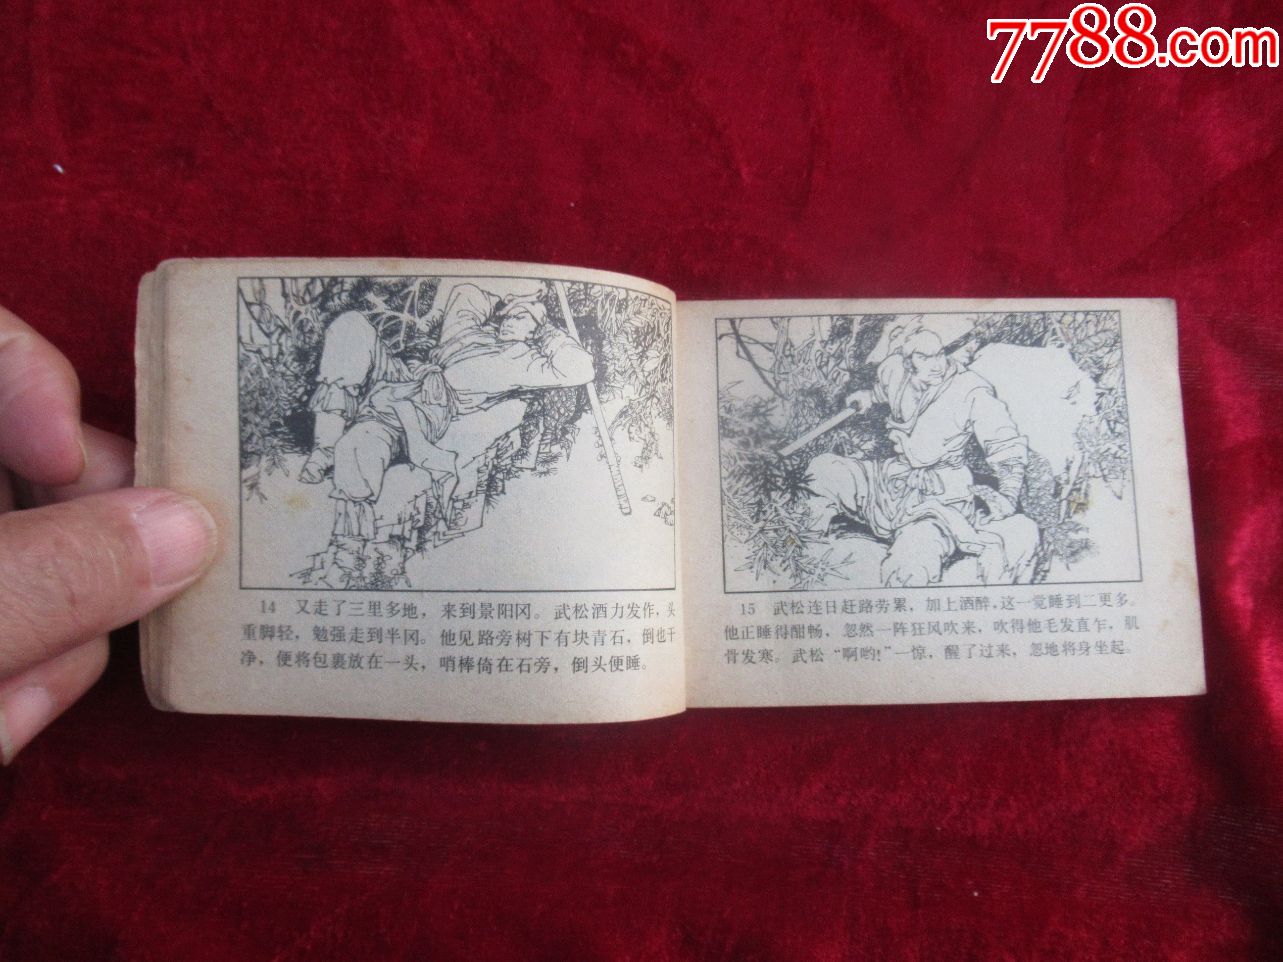 1983年版《武松》之一景阳冈打虎连环画小人书(以图为